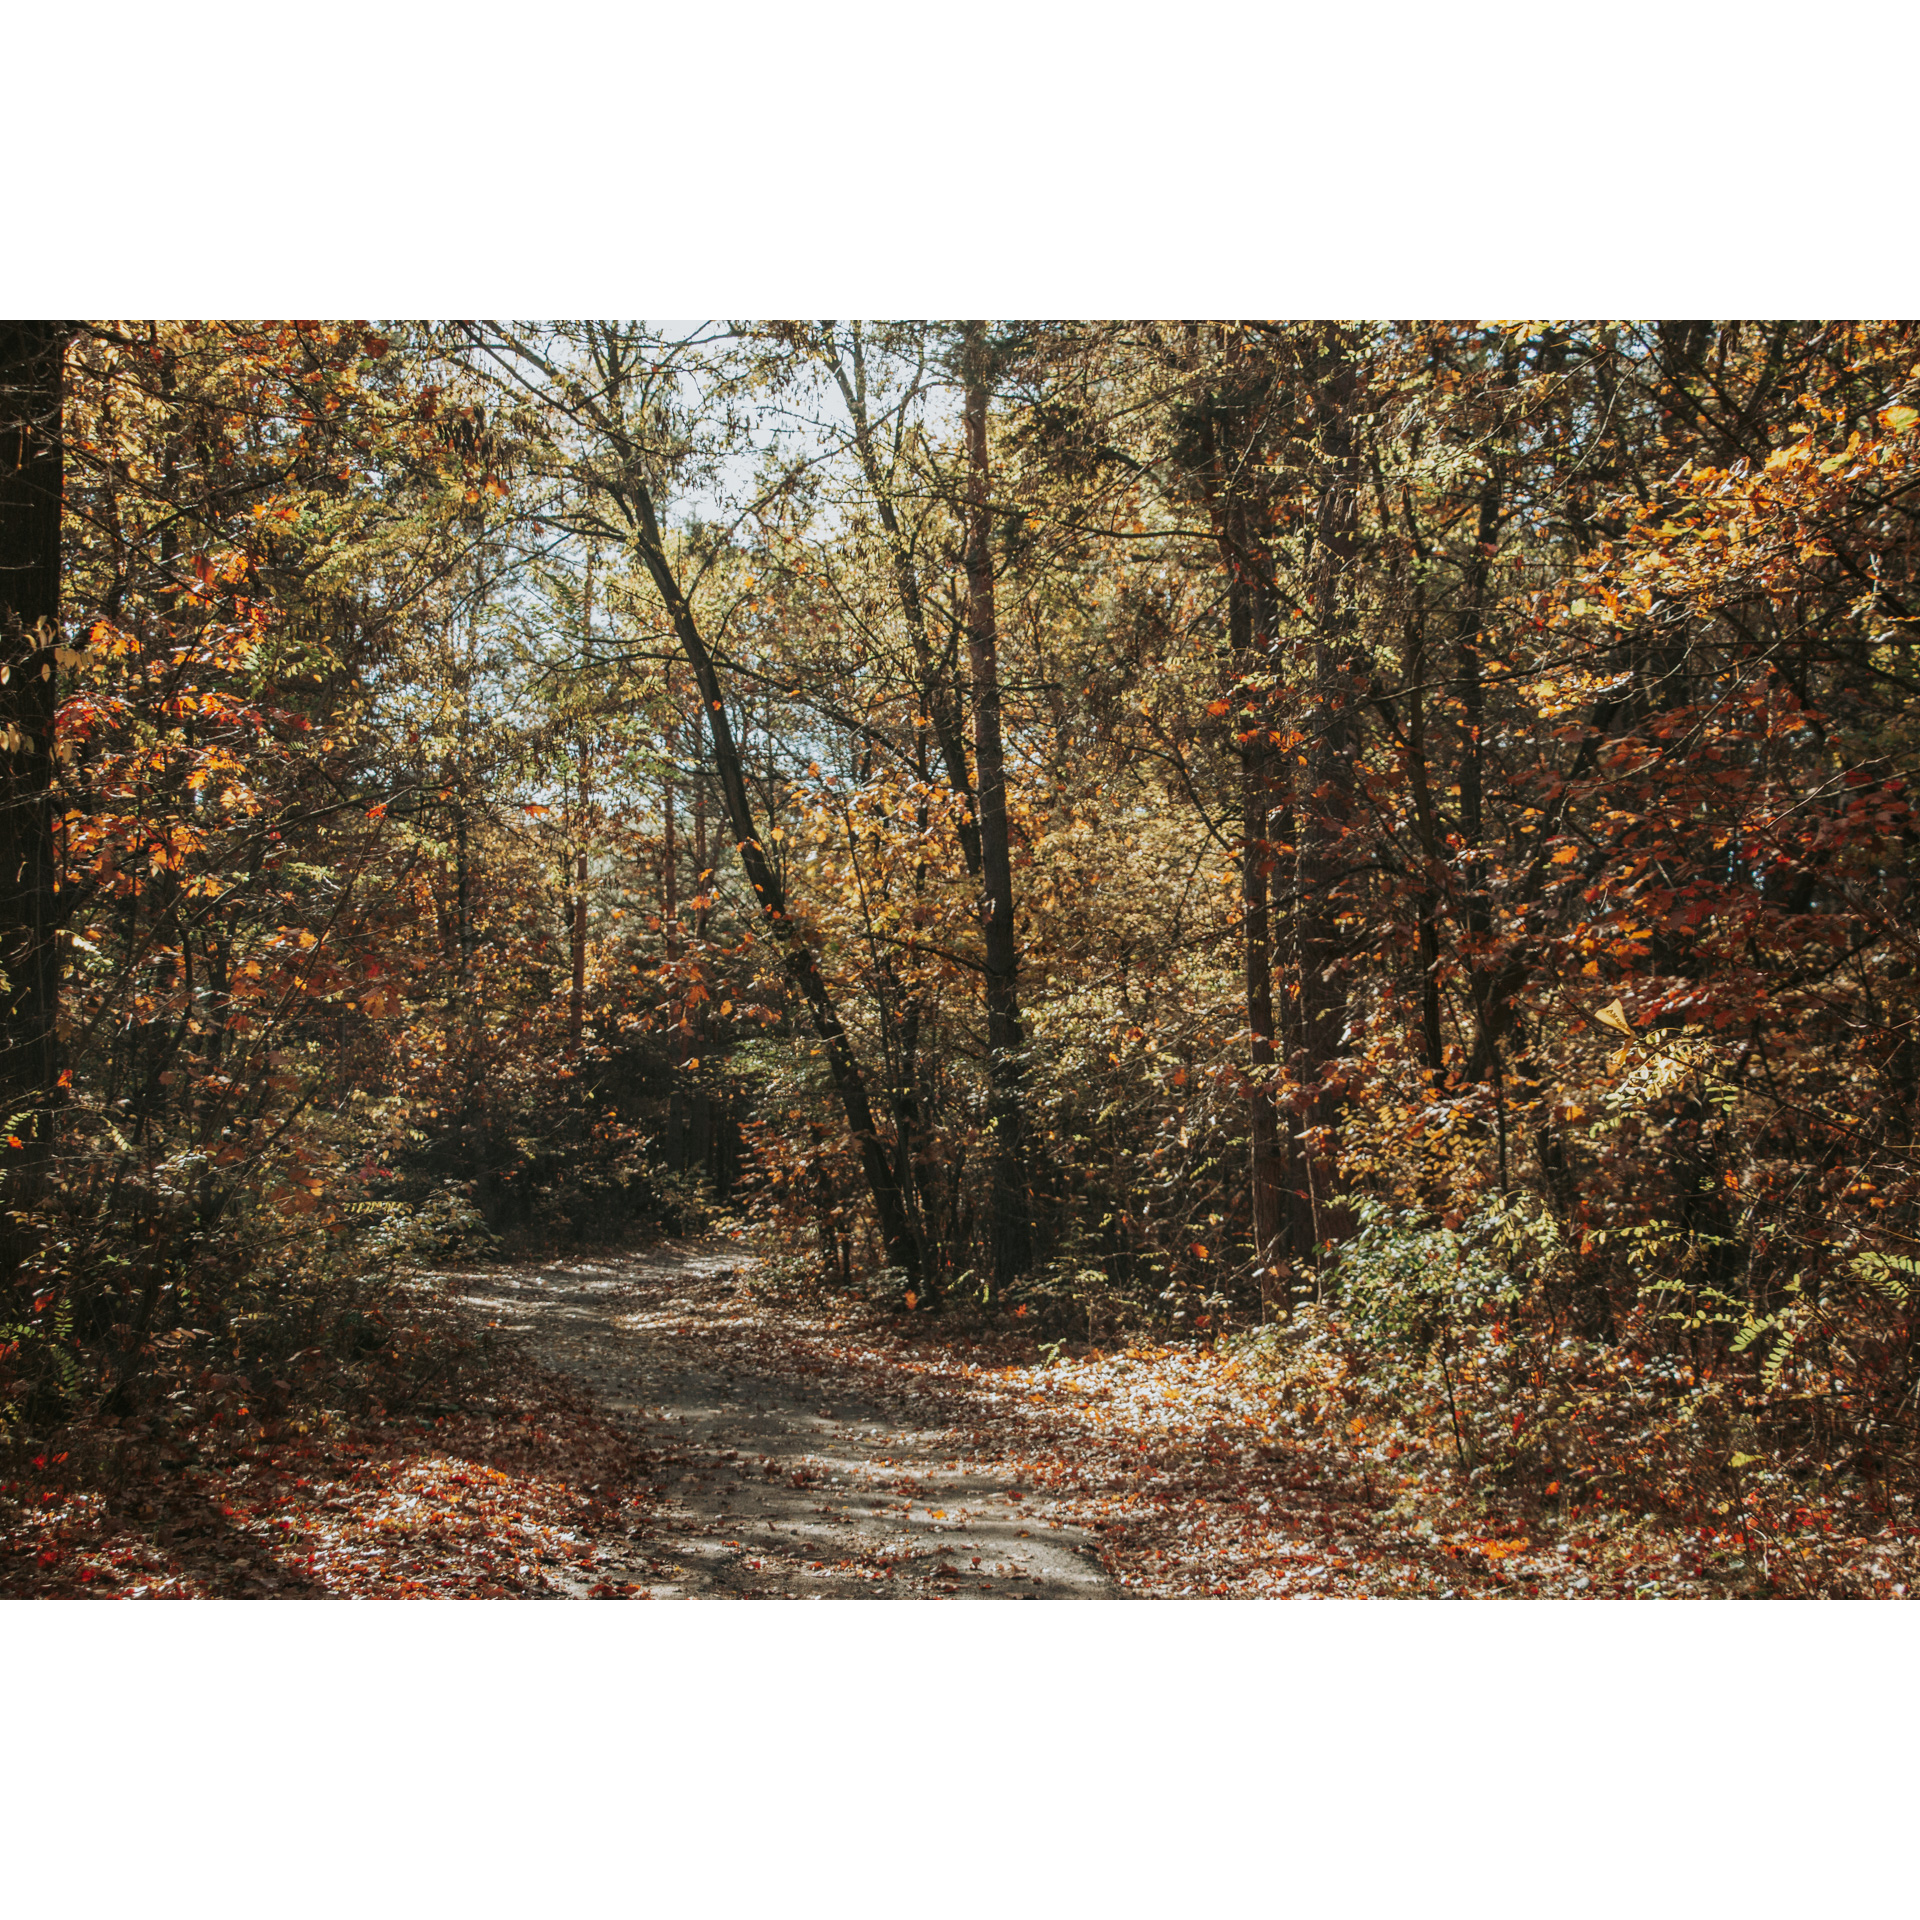 Leśna, piaszczysta droga zasypana brązowymi liśćmi wśród brązowo-zielono-rudych drzew